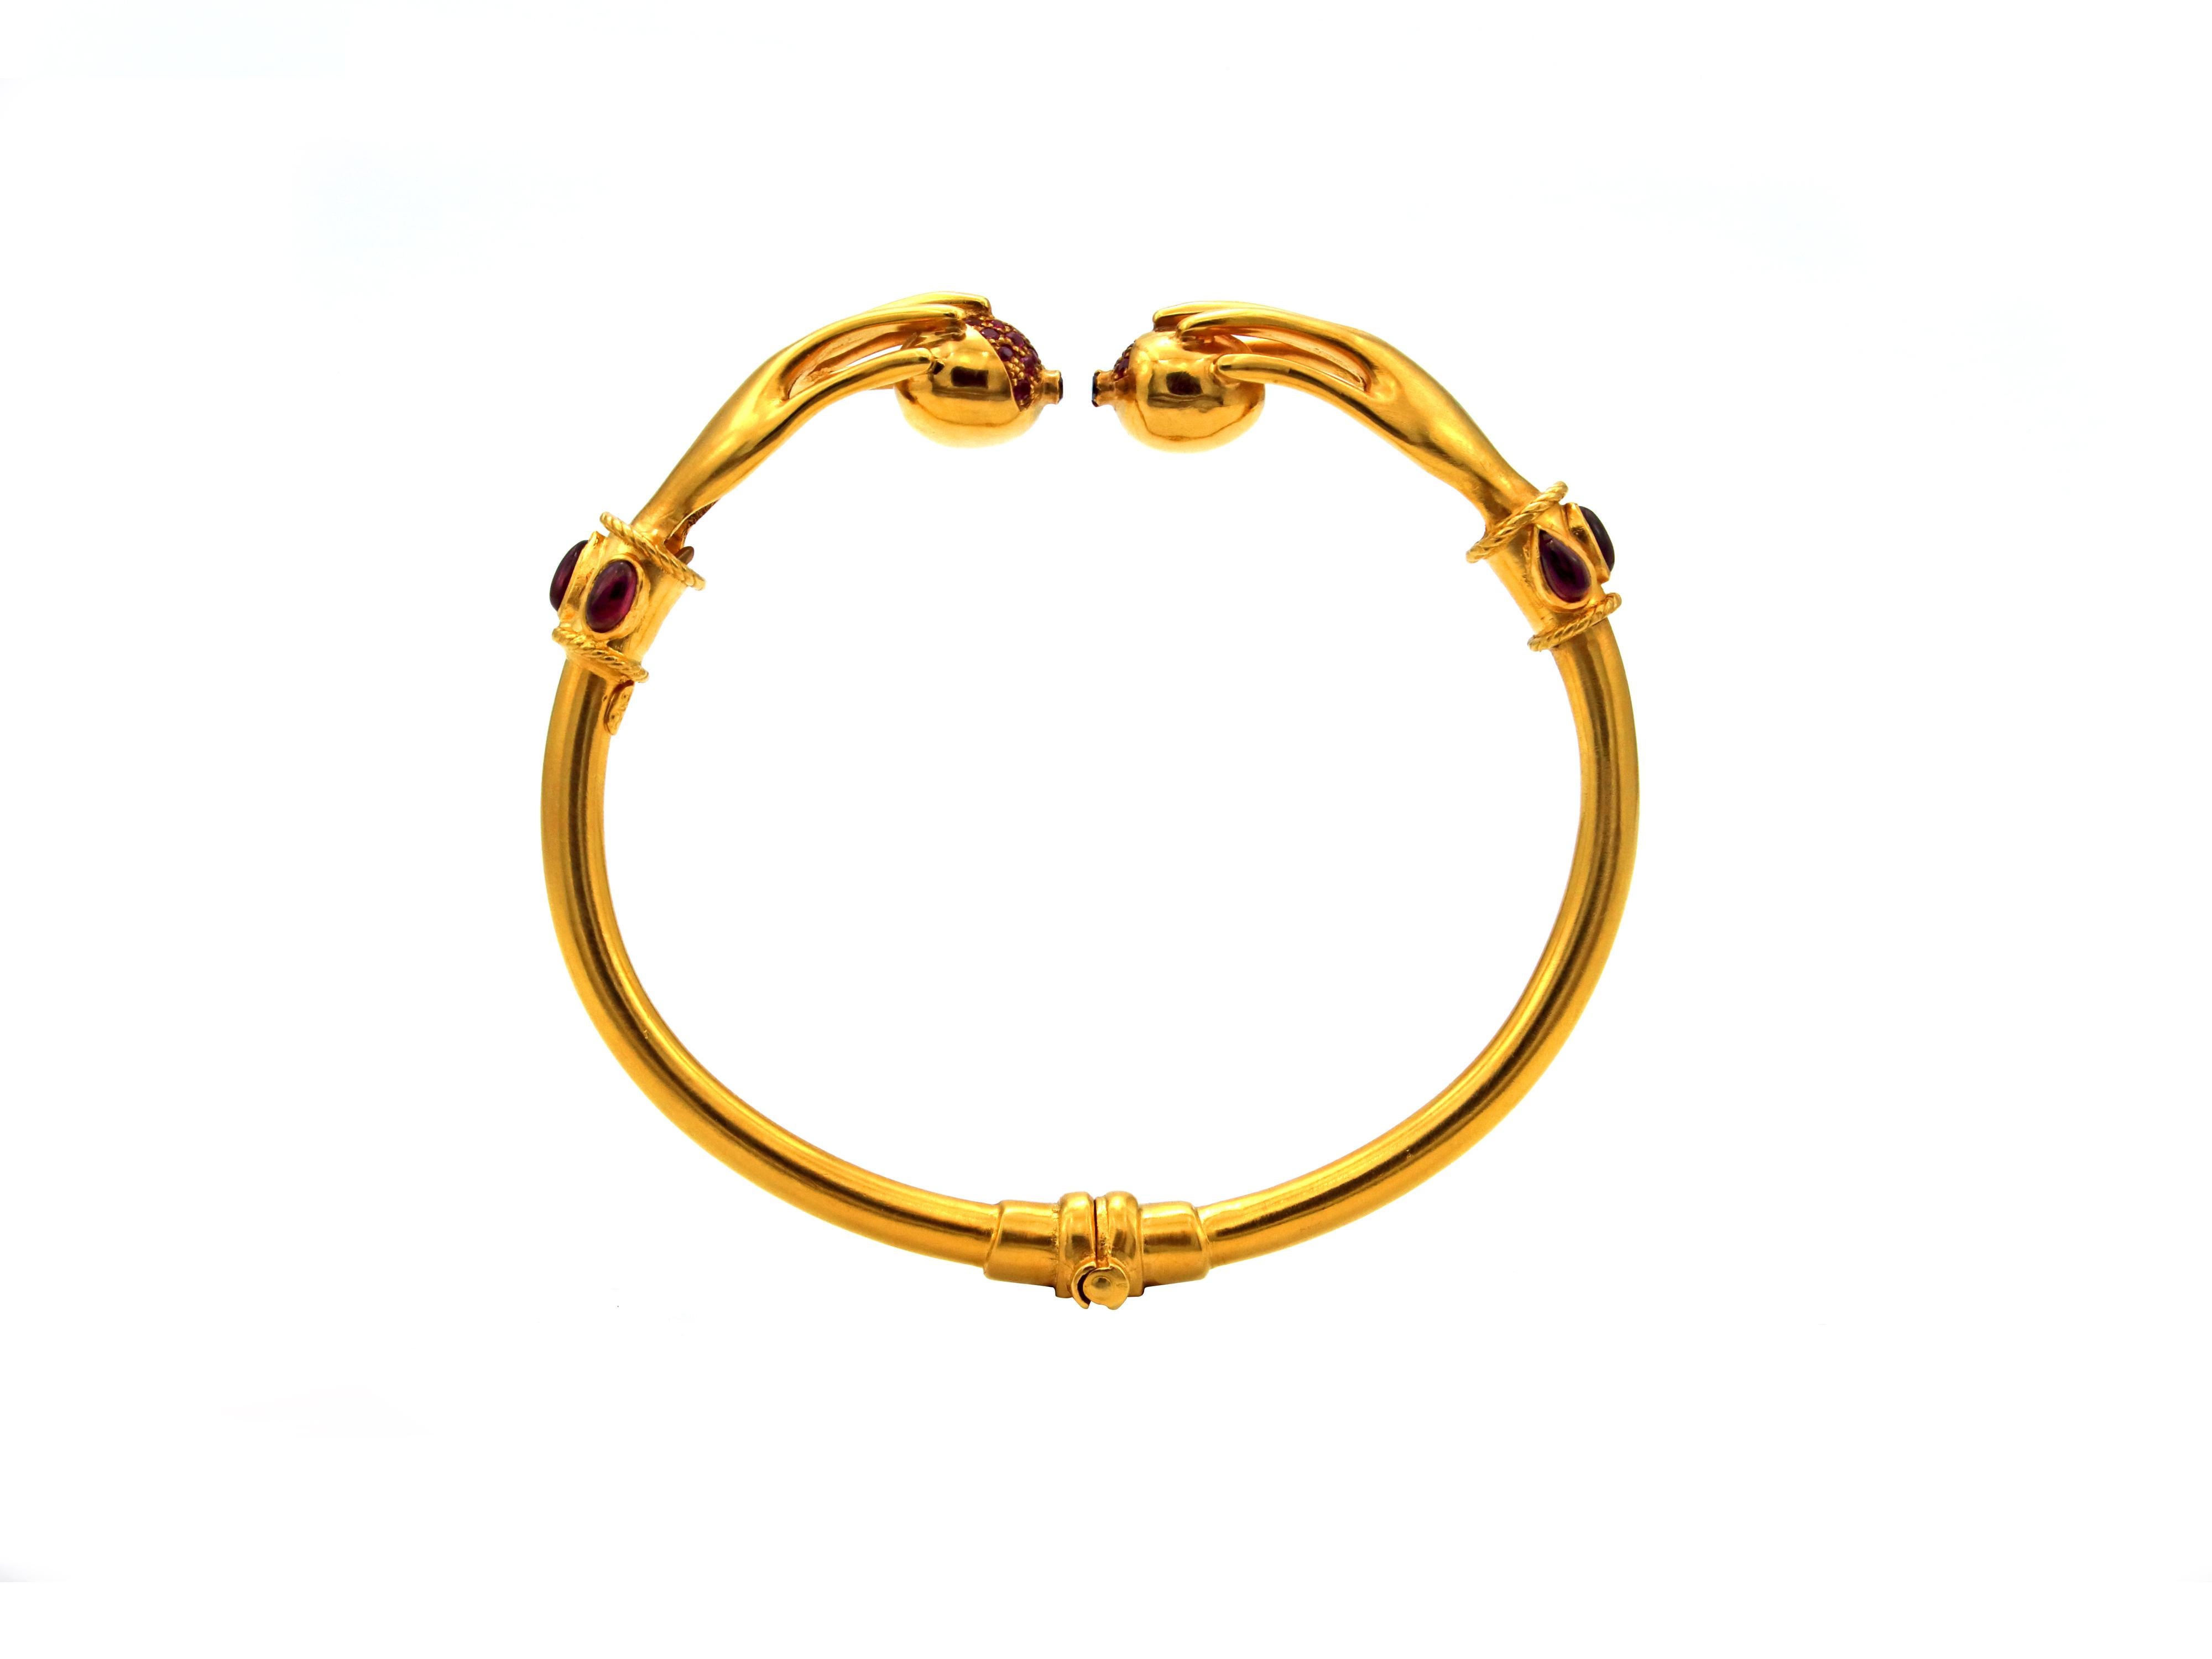 Ein mythischer Armreif der Liebe und ein Stück Geschichte. Das Persephone-Armband aus 22 Karat Gold ist komplett handgefertigt und mit Granatapfelrubinen und Saphiren besetzt. Es ist nicht nur ein einzigartiges Stück, sondern hat auch eine